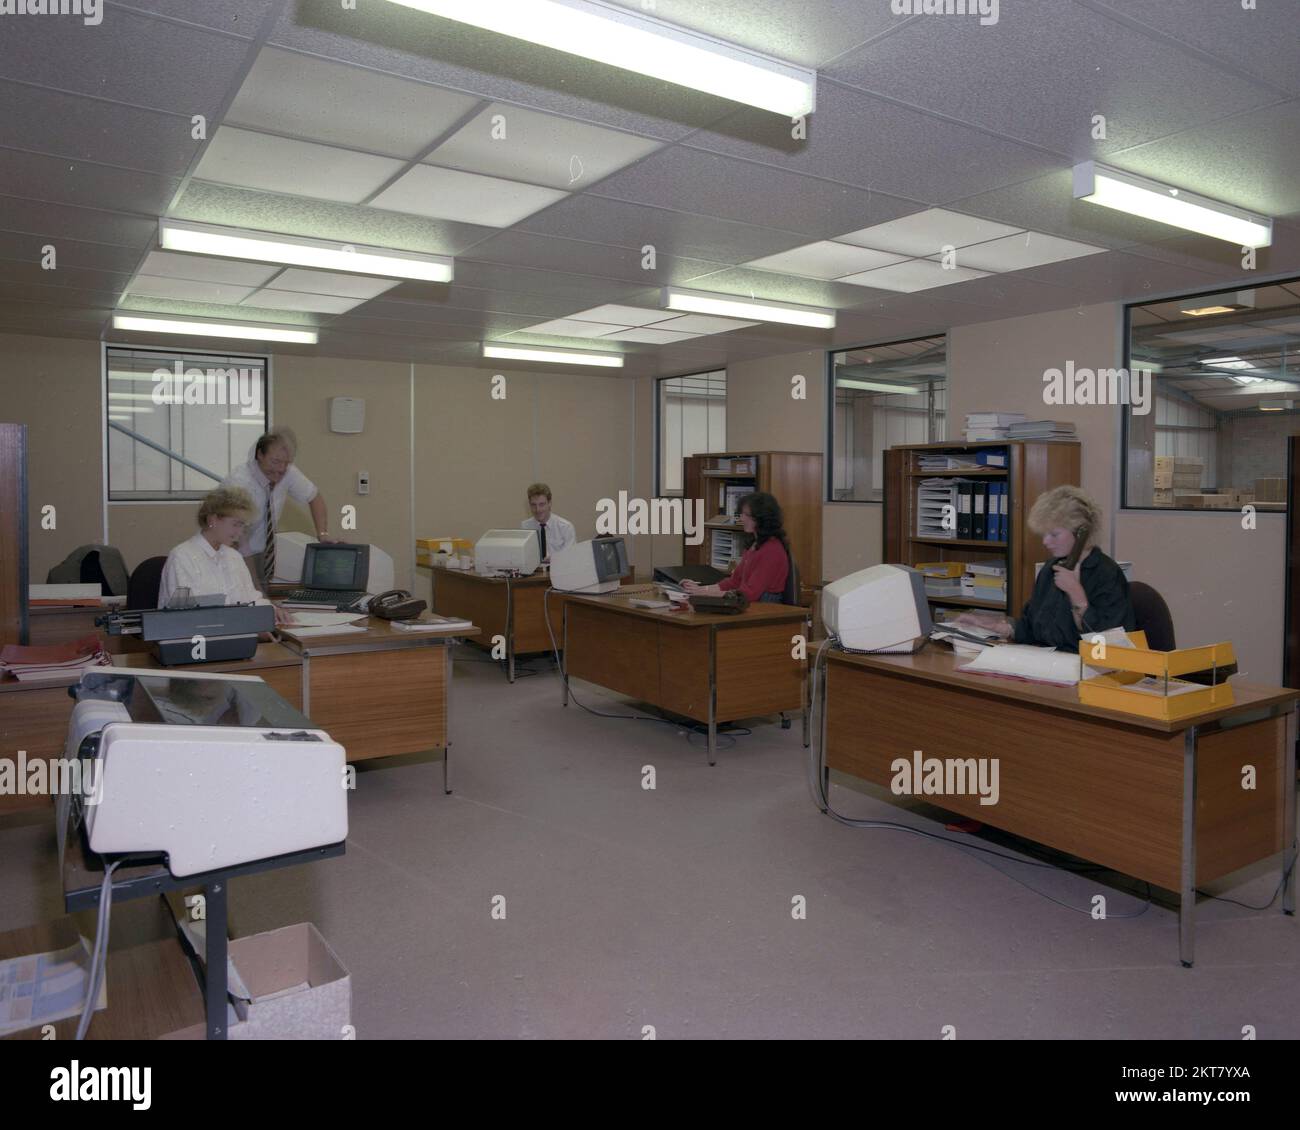 1989s, histórico, interior de una oficina de planta abierta, terminal de ordenadores de la época en los escritorios de madera. Una máquina de escribir internacional Olympia que está siendo utilizada por una empleada. Foto de stock